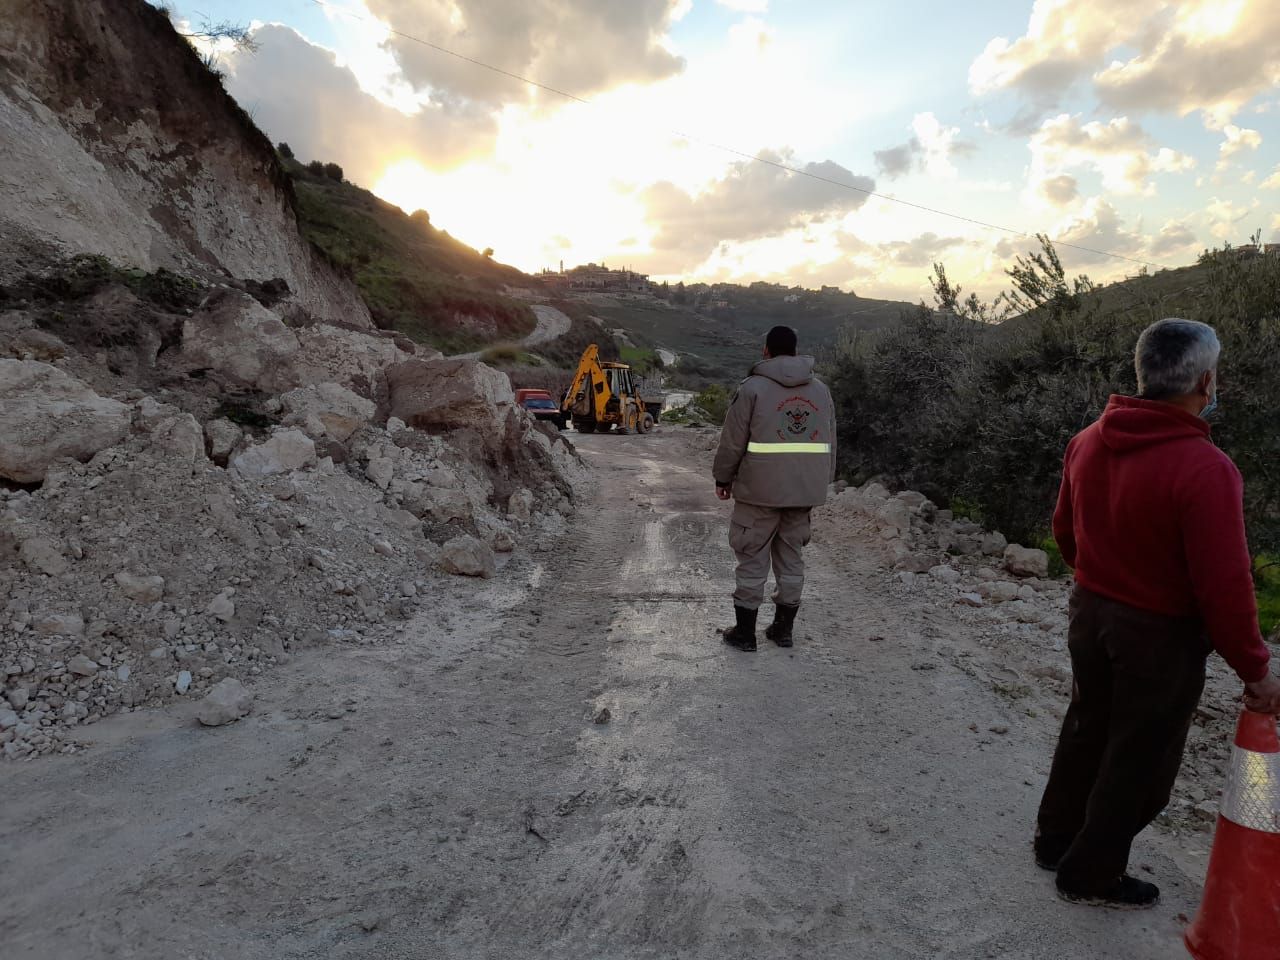 انهيار التربة للمرة الثانية على طريق معركة - يانوح و بلدية معركة عملت على فتحها بالتعاون مع جمعية الرسالة للإسعاف الصحي.